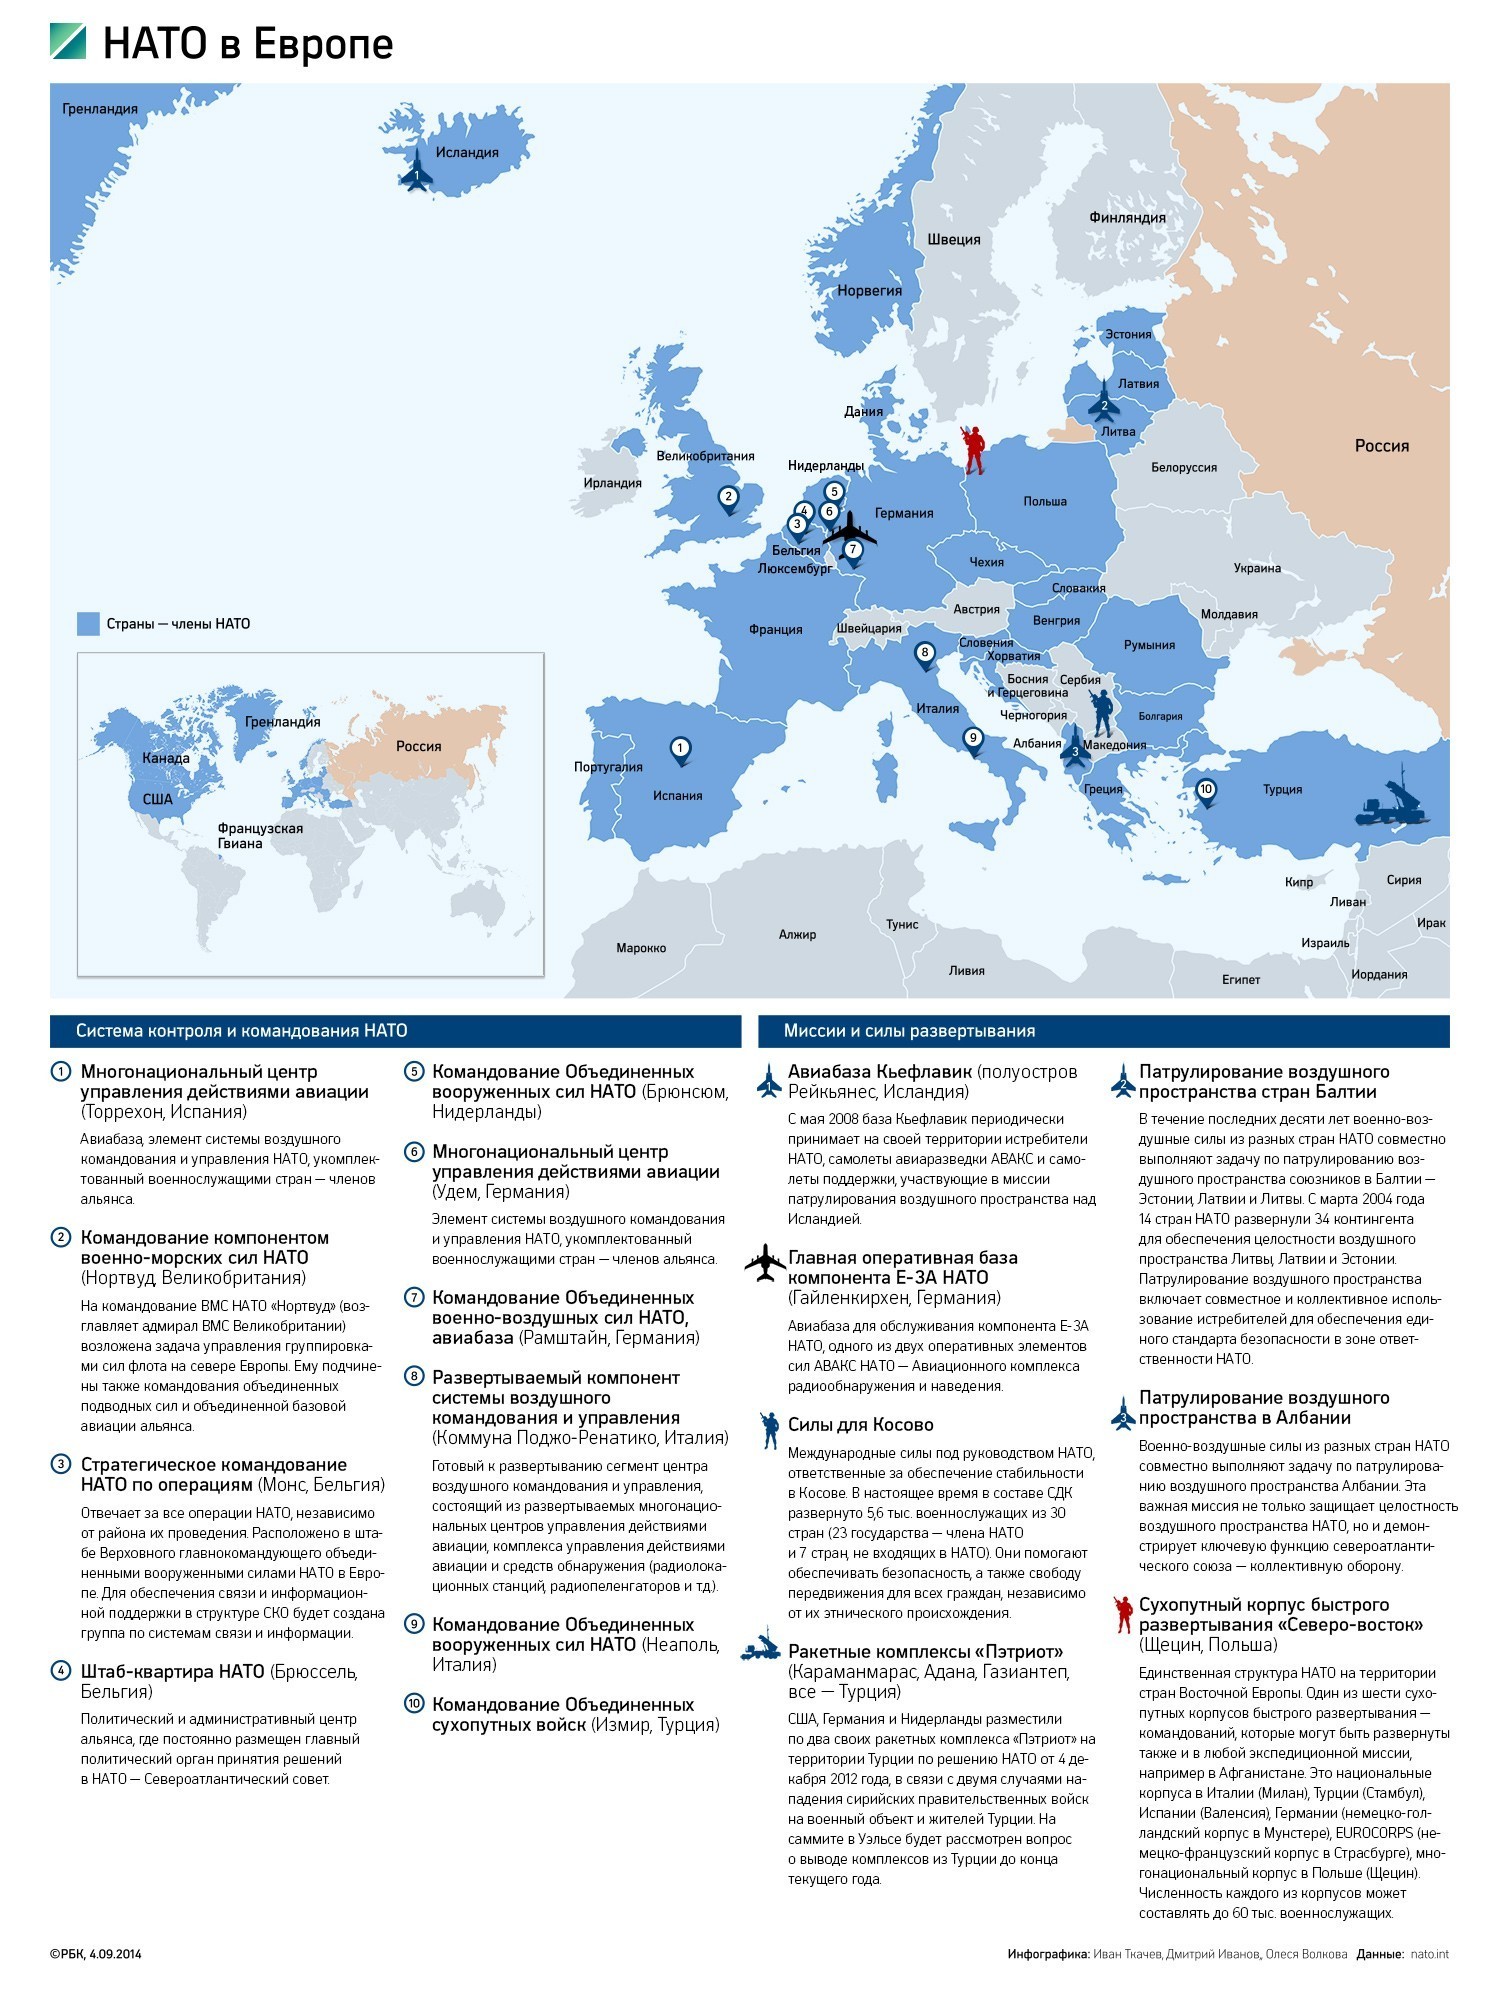 Страны НАТО решили увеличить военные расходы до 2% от ВВП